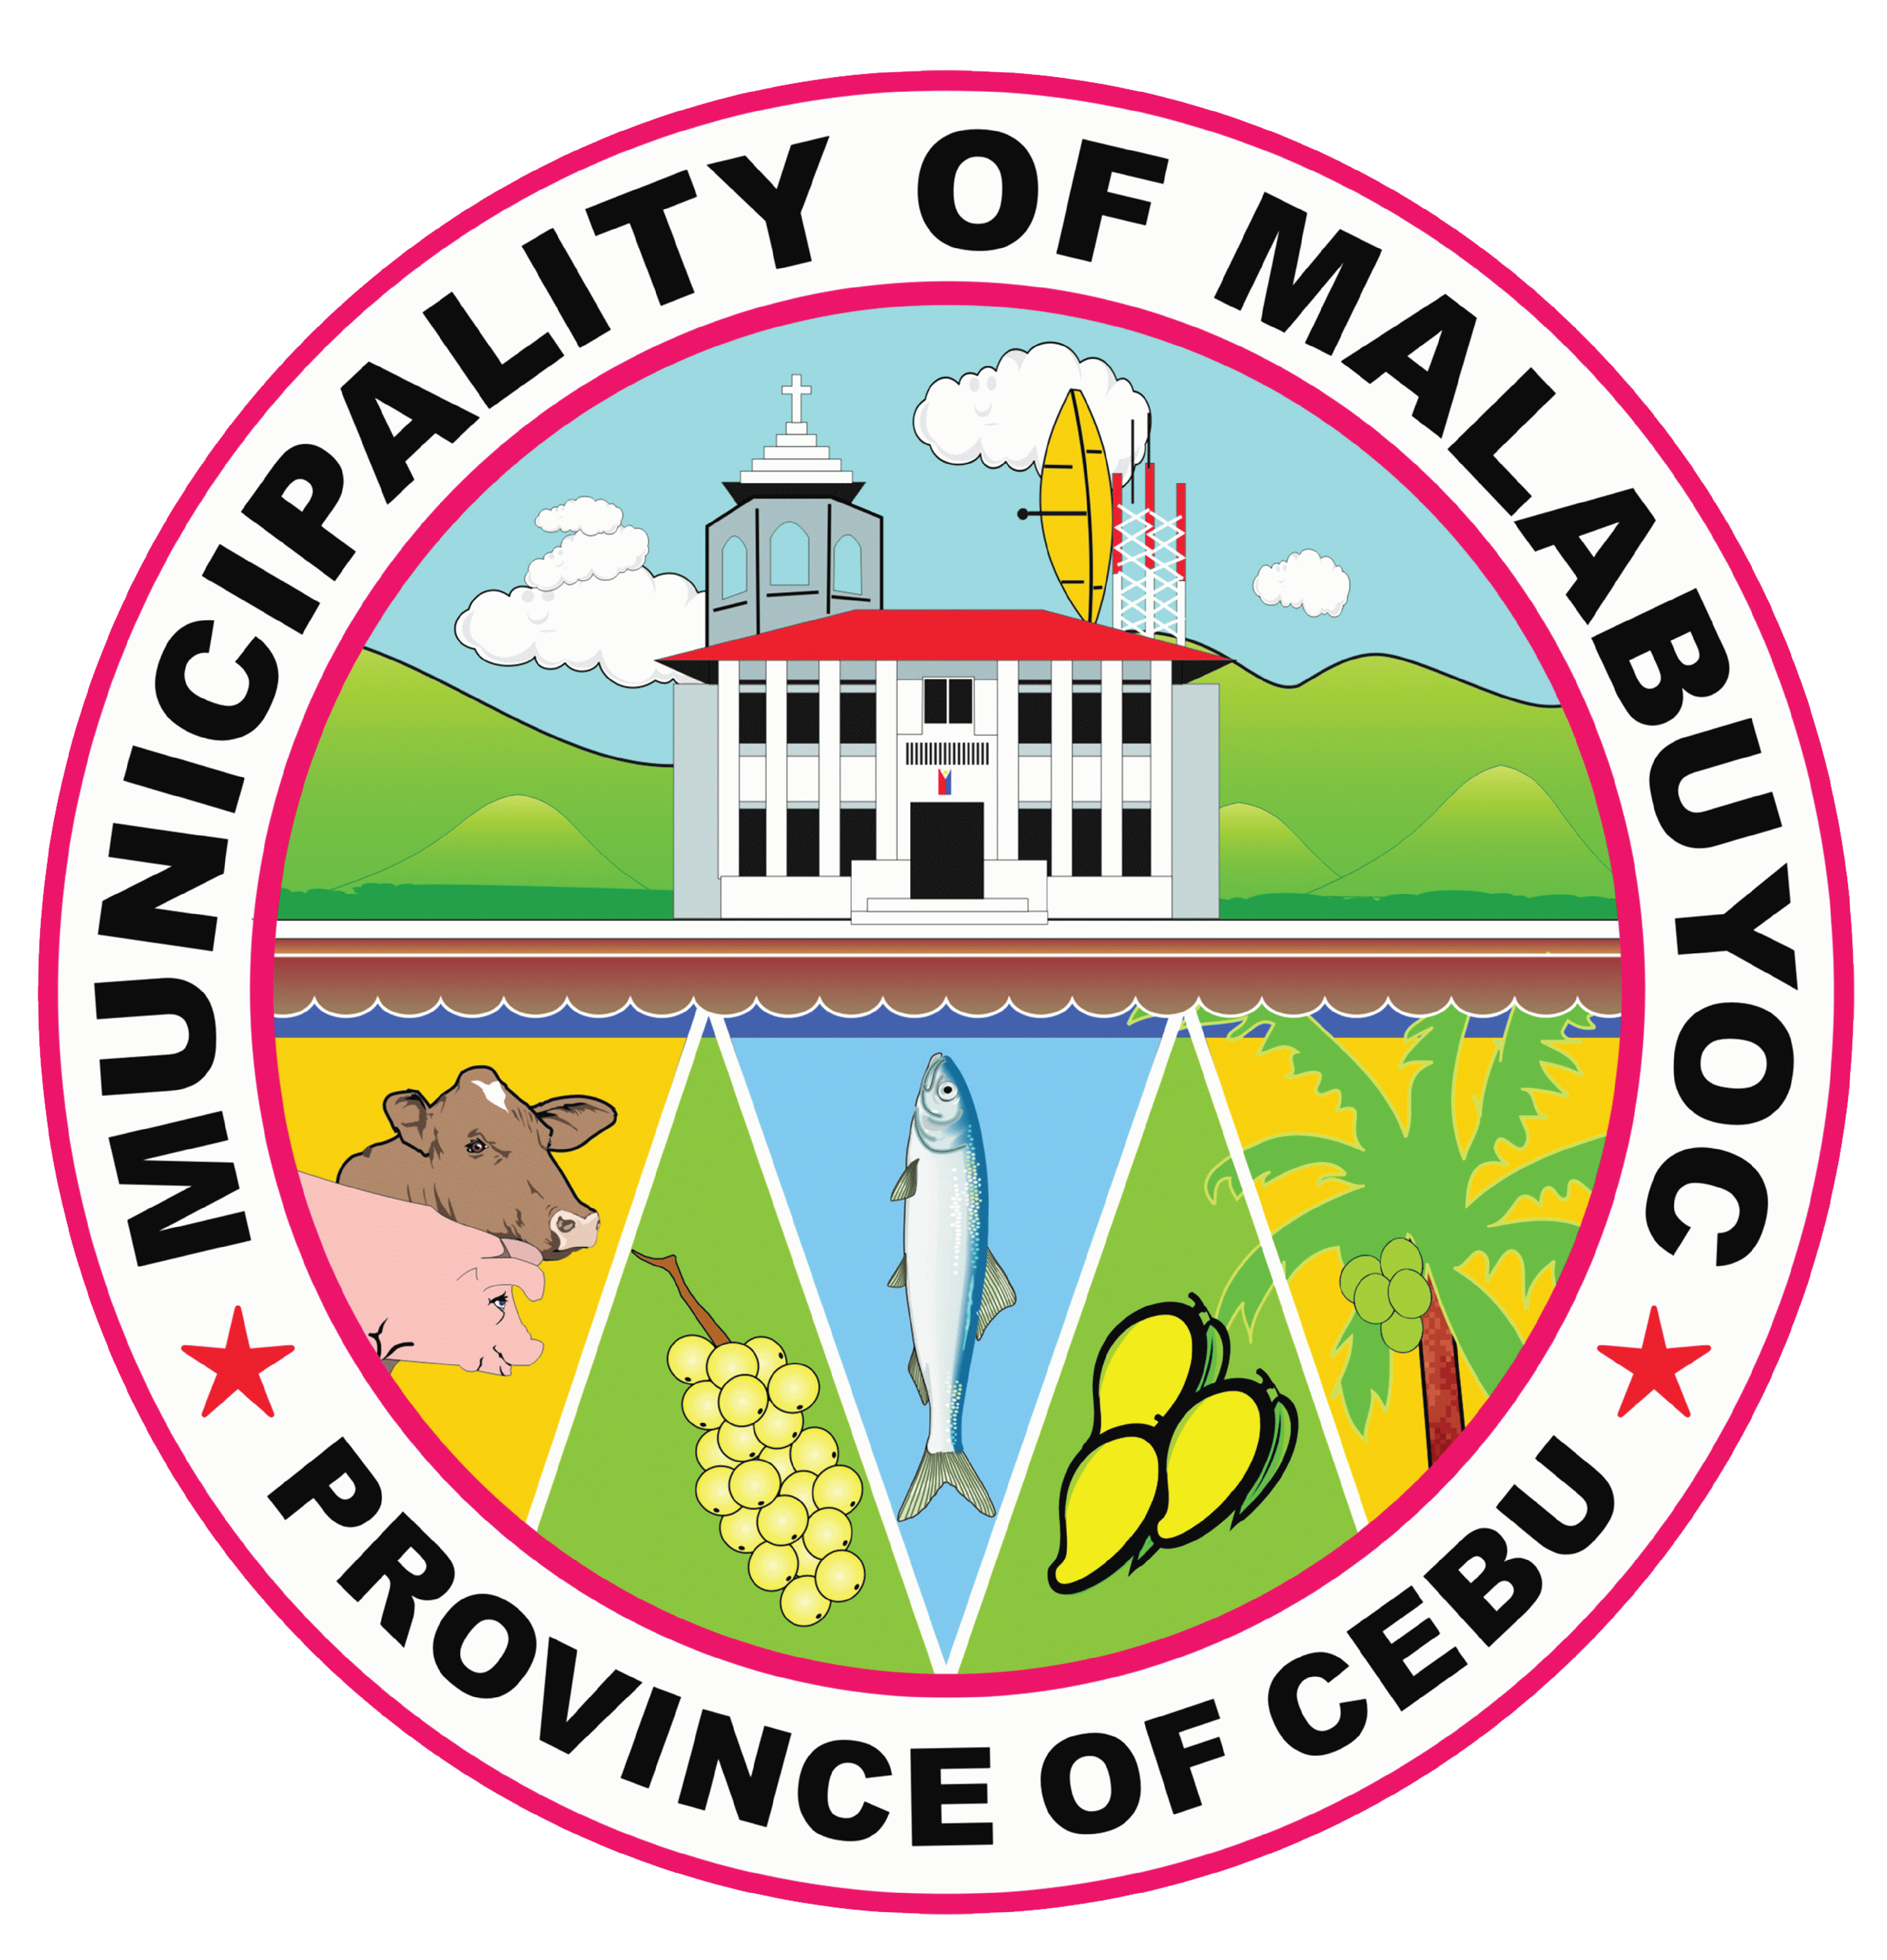 Municipality of Malabuyoc